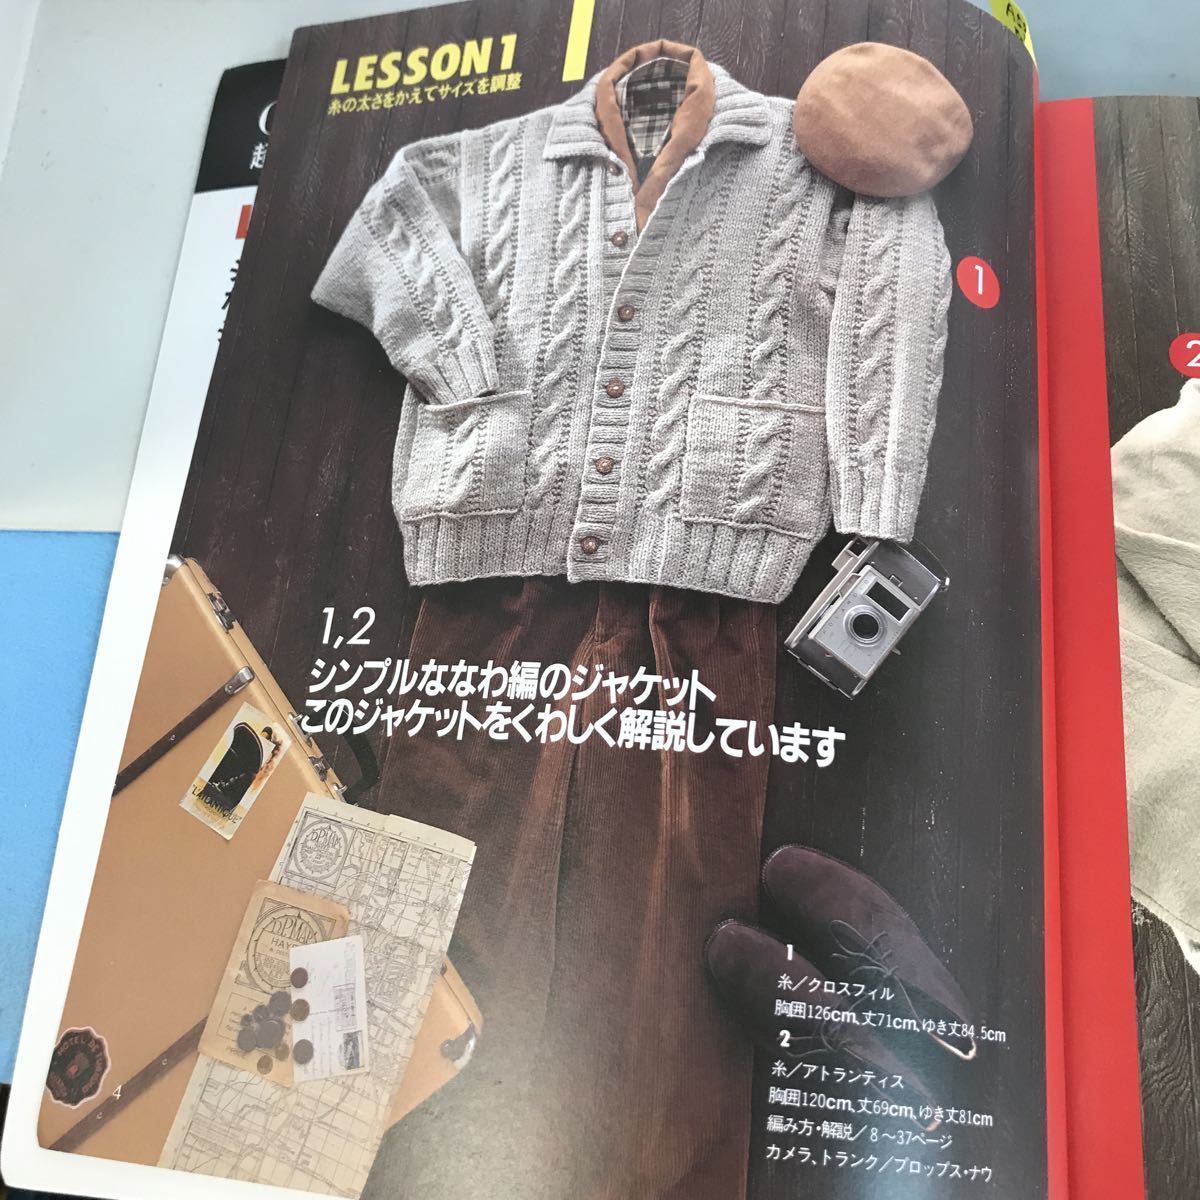 A52-039 超初心者さんだいじょうぶ はじめて編む彼のジャケット 使用糸が通信販売で買えます 日本ヴォーグ社5314_画像6